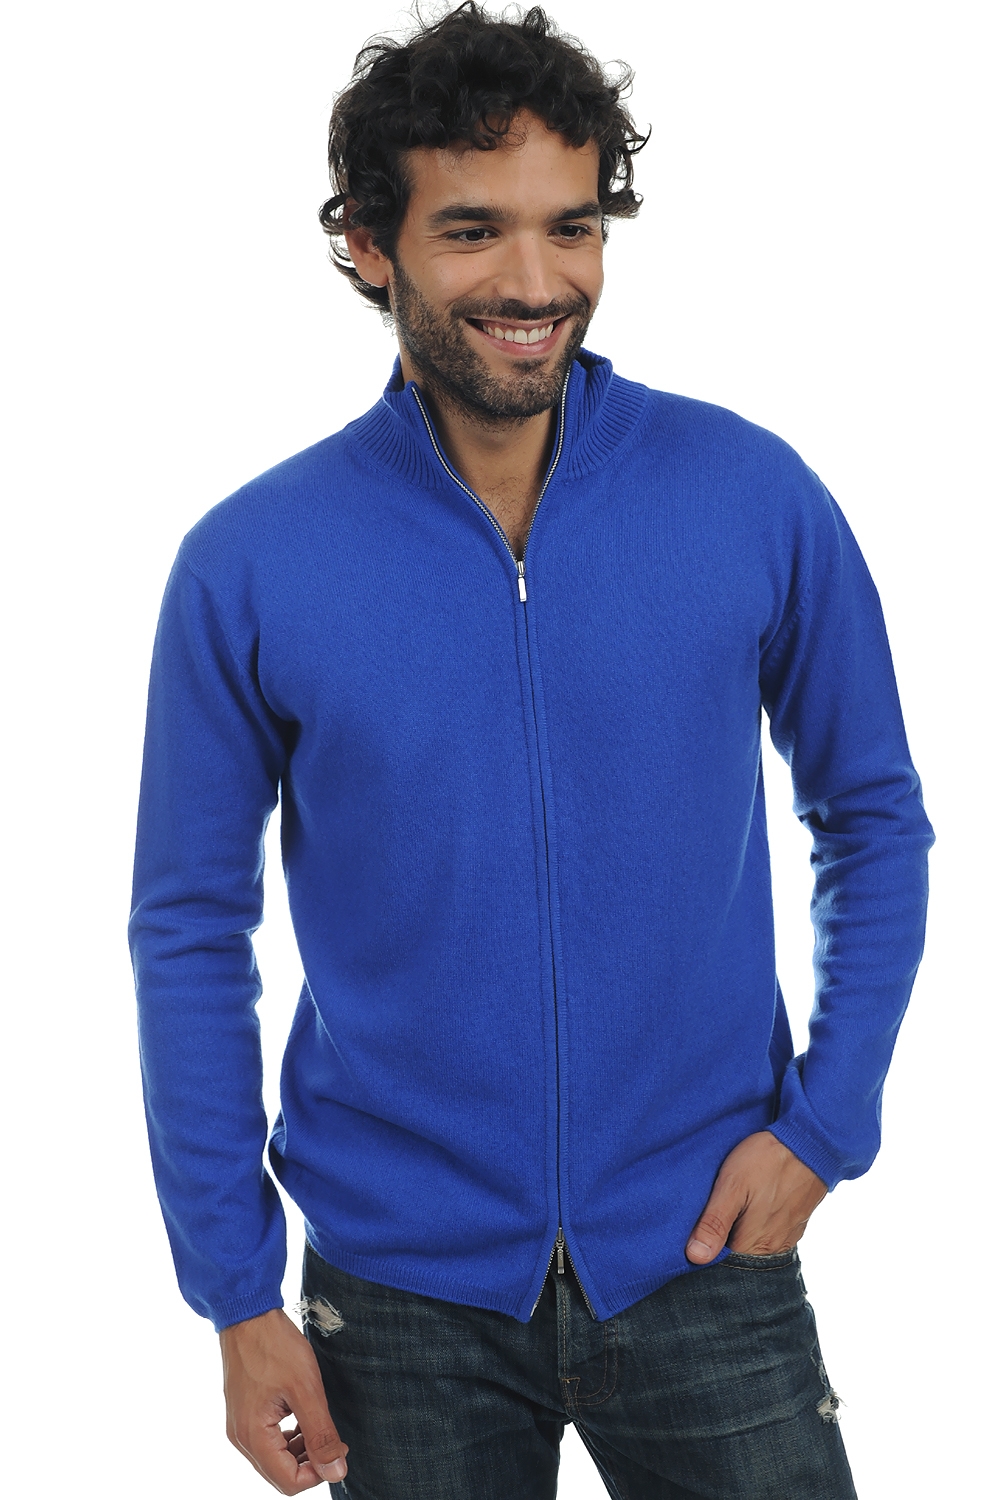 Cachemire pull homme zip capuche elton bleu lapis 4xl